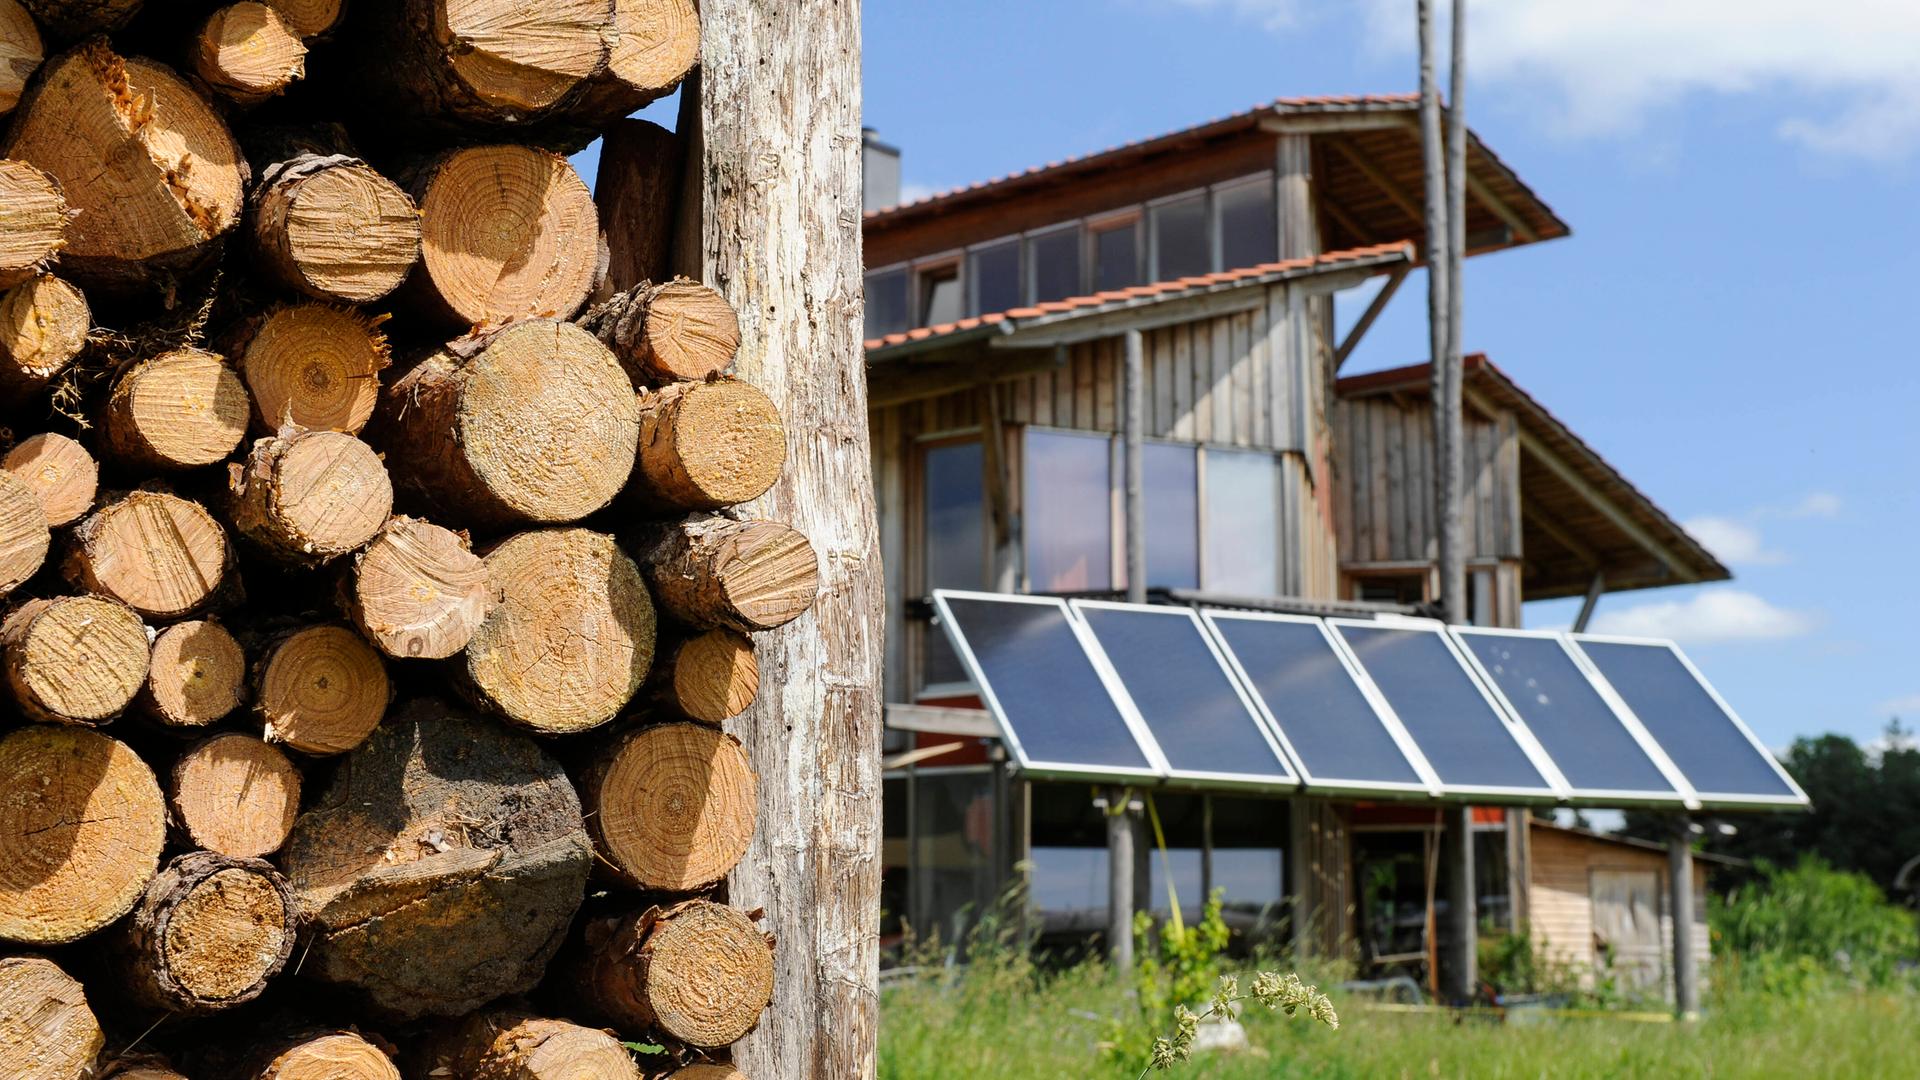 Wohnhaus aus Holz mit Sonnenkollektoren für Heizung und Warmwasser. Im Vordergrund ein Holzstapel.